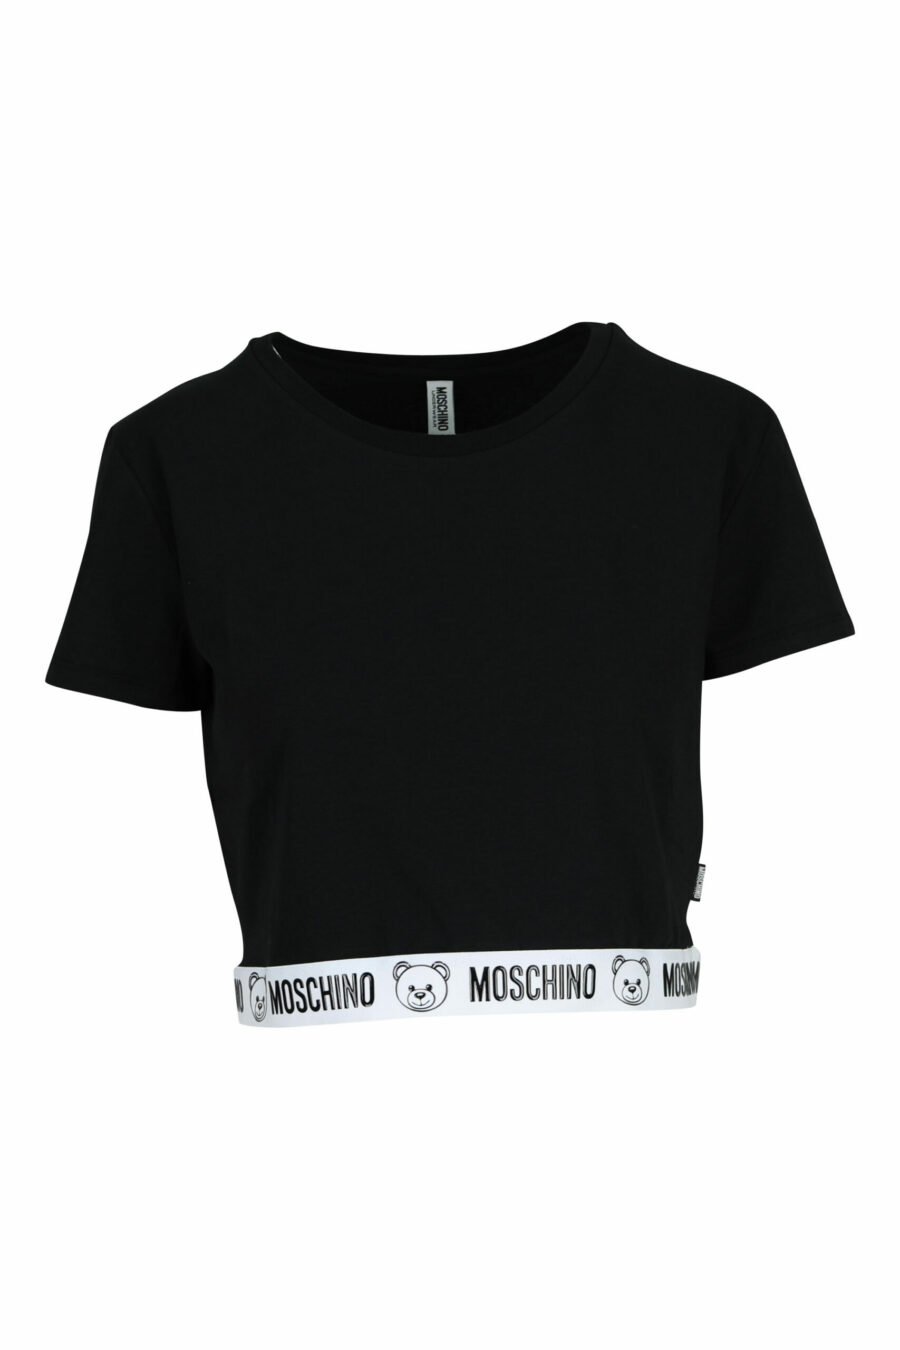 Short black T-shirt with bear logo on white ribbon - 667113355283 scaled